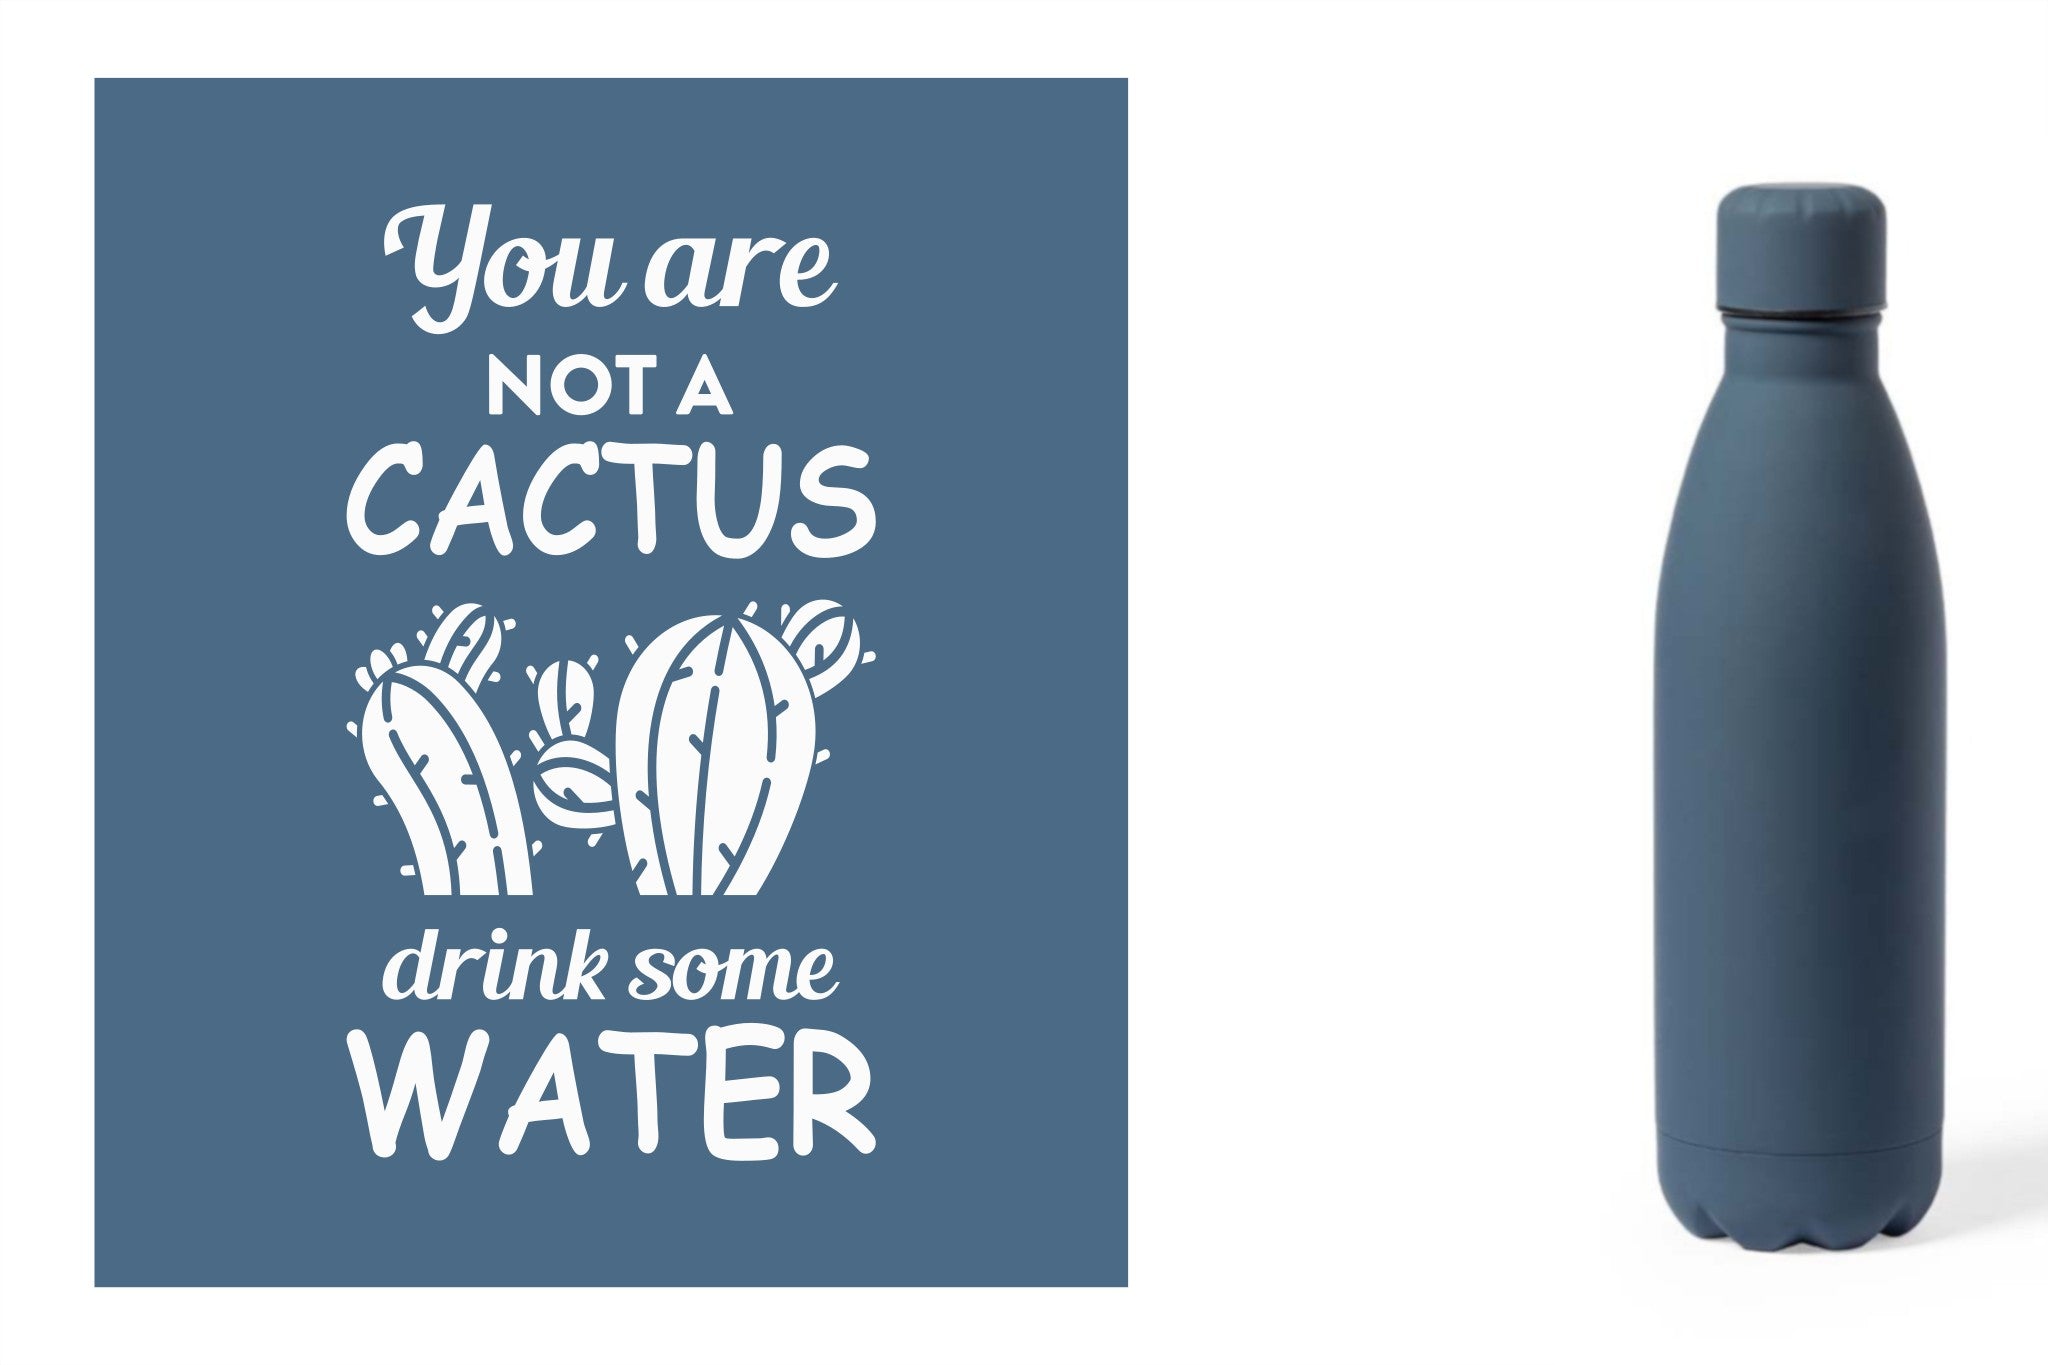 Metalen drinkfles, onbreekbare waterfles, aluminium drinkfles, hydratatiefles, fles van RVS, roesvrijstalen watercontainer met water quote 'You are not a cactus, drink some water' kleur blauw.